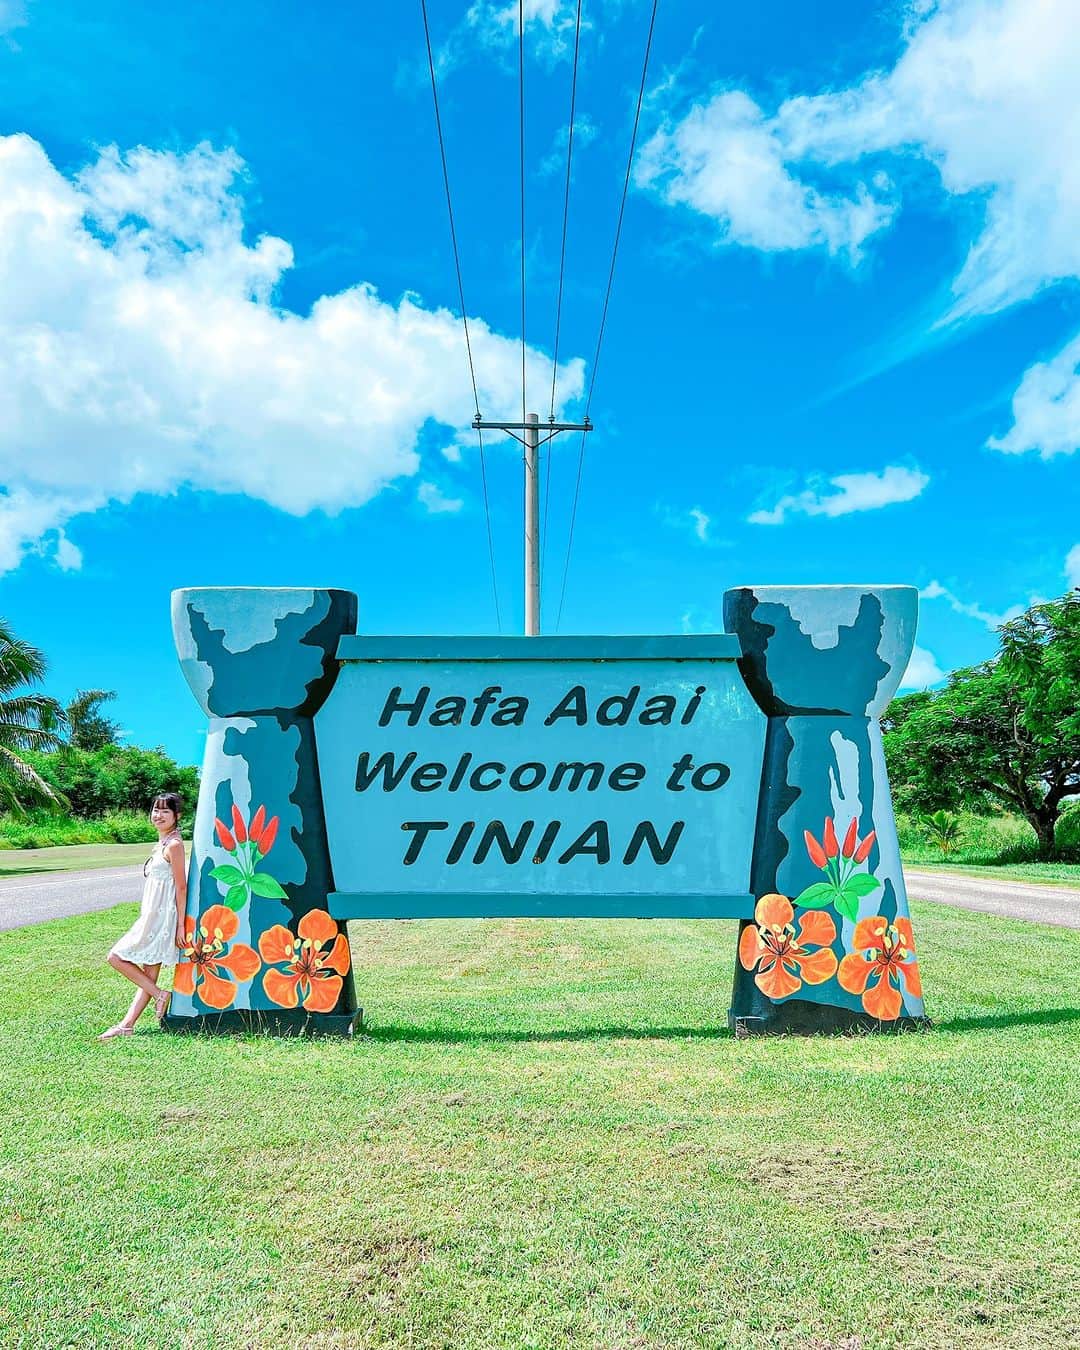 マリアナ政府観光局のインスタグラム：「Hafa Adai Welcome to TINIANと書かれたボードがお迎えしてくれるのはテニアン島のブロードウェイ。 　　　　　　　　　　 「Hafa Adai」とはマリアナの先住民族の一つチャモロの言葉で、いつでもどこでも気軽に使う挨拶です。英語の「ハロー」のように、マリアナ旅行中は「ハファディ」や「ハファダイ」とローカル気分で挨拶してみてくださいね👋 　　　　　　　　　　 テニアンのブロードウェイは島を南北に一直線に貫いている約11kmの道路。信号がなく通行量も多くないので気持ちよくドライブするのにぴったり！ レンタカーを借りて南の島ならではのゆったりドライブを楽しむ日があっても良いかも。 　　　　　　　　　　 ブロードウェイのすぐ近くにあるホテル「テニアン ウェスタンロッジ」は宿泊とレンタカーがセットになったプランがあるので、レンタカー利用の旅行にはおススメです。 　　　　　　　　　　 📷 1: @tabi_palette  2: @tinianwesternlodge 　　　　　　　　　　  ￣￣￣￣￣￣￣￣￣￣￣￣ @mymarianas_mva ではサイパン、テニアン、ロタの観光情報やキャンペーン情報を紹介しています。フォローして旅行準備に役立ててくださいね。　 　　　　　　　　　　　　　 2022/9/1 成田～サイパン 🏝 直行便就航 成田発　週3便（火・木・日） 　　　　　　　　　　　　　 【12歳以下が対象】パスポート取得サポート特典～マイファーストバケーションはマリアナ！ ⏩ https://japan.mymarianas.com/otoku-marianacation/myfirstvacation-saipan/　 ＿＿＿＿＿＿＿＿＿＿＿＿ 　　　　　　　　　　　　　 #テニアン #ブロードウェイ #ドライブ #挨拶 #看板  #サイパン #ロタ #マリアナ #テニアン旅行 #デイトリップ  #サイパン旅行 #日帰り旅行 #離島巡り #島旅 #テニアンブロードウェイ  #海外旅行 #南の島 #島暮らし  #tinian #nmi #saipan #rotailsnad #islandlife #vacation #sky #naturetravel  #summervacation #trip #beautifuldestinations」